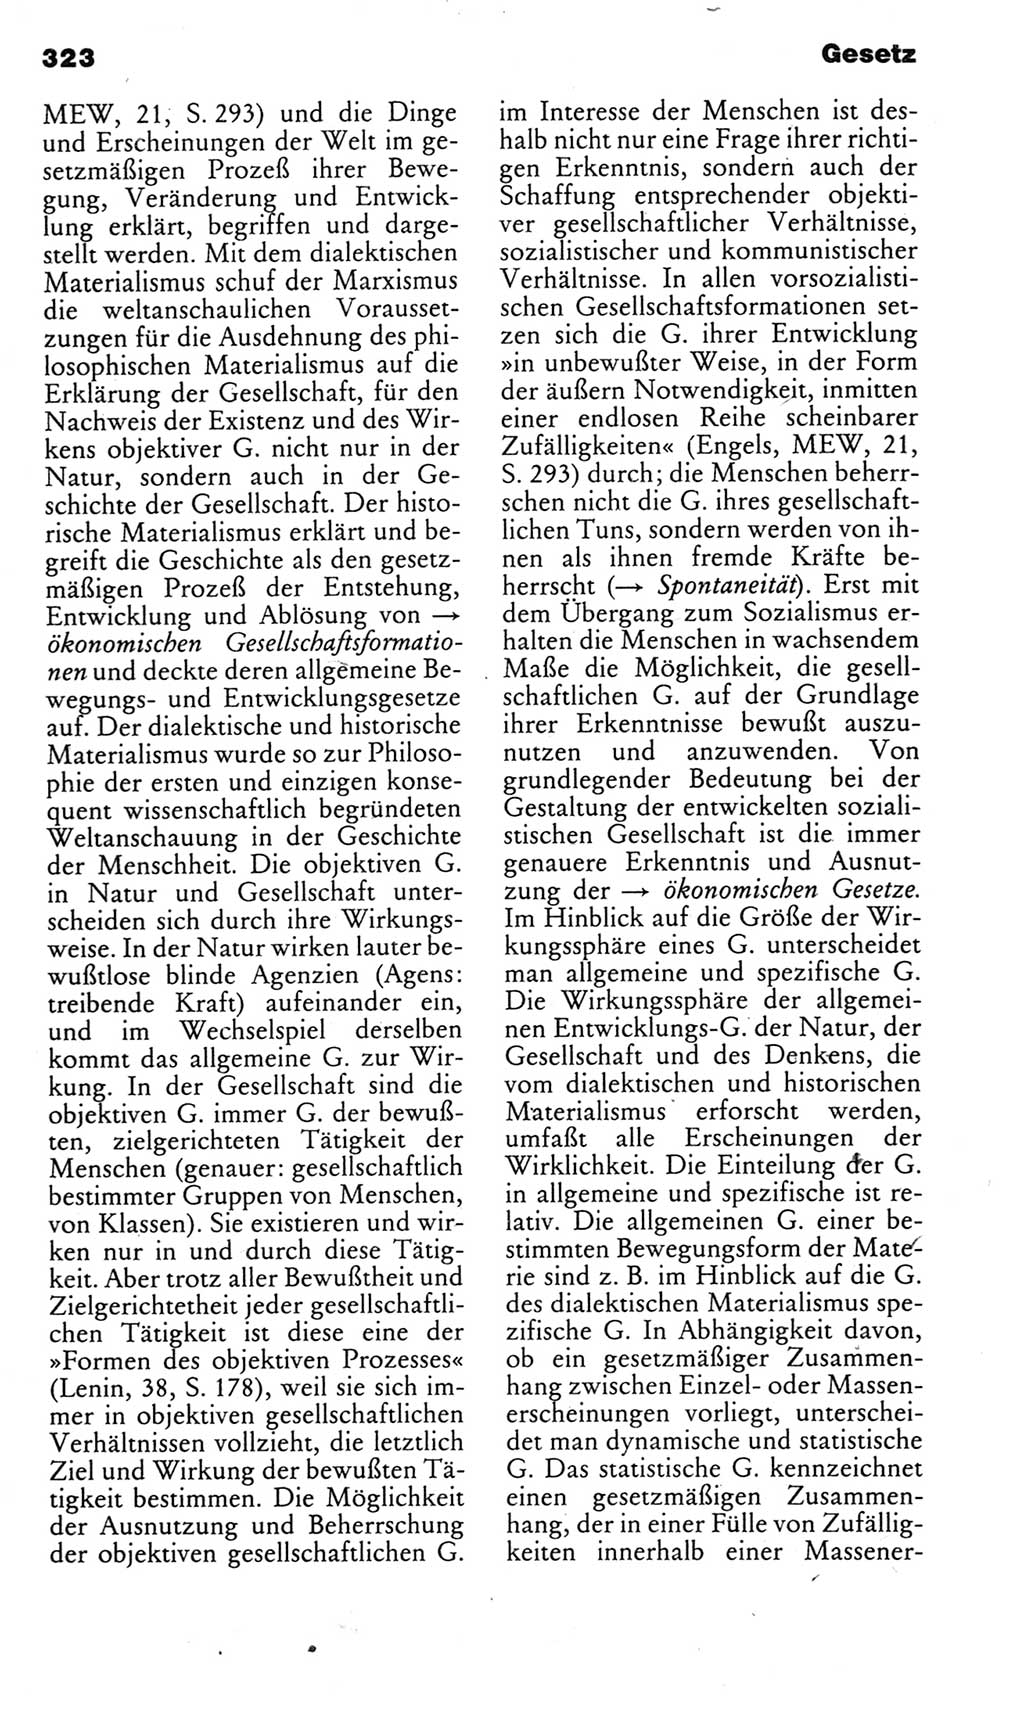 Kleines politisches Wörterbuch [Deutsche Demokratische Republik (DDR)] 1983, Seite 323 (Kl. pol. Wb. DDR 1983, S. 323)